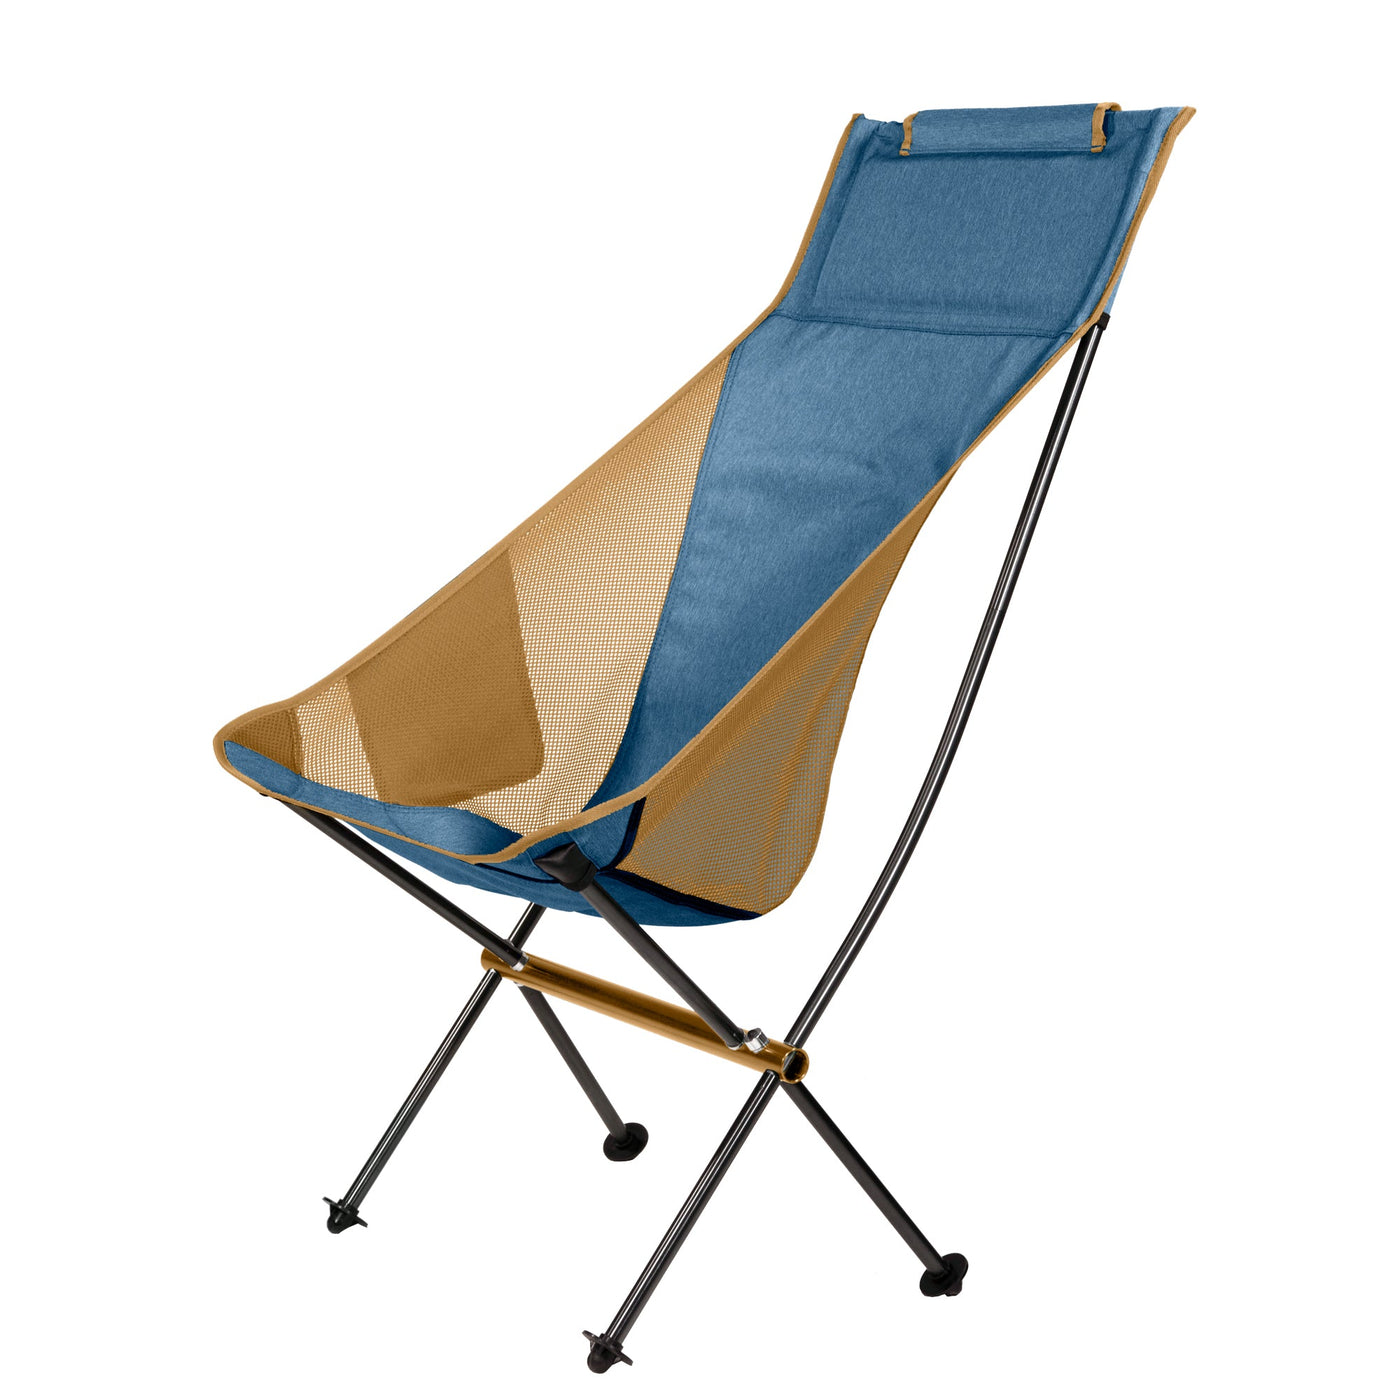 Ridgeline Camp Chair by Klymit